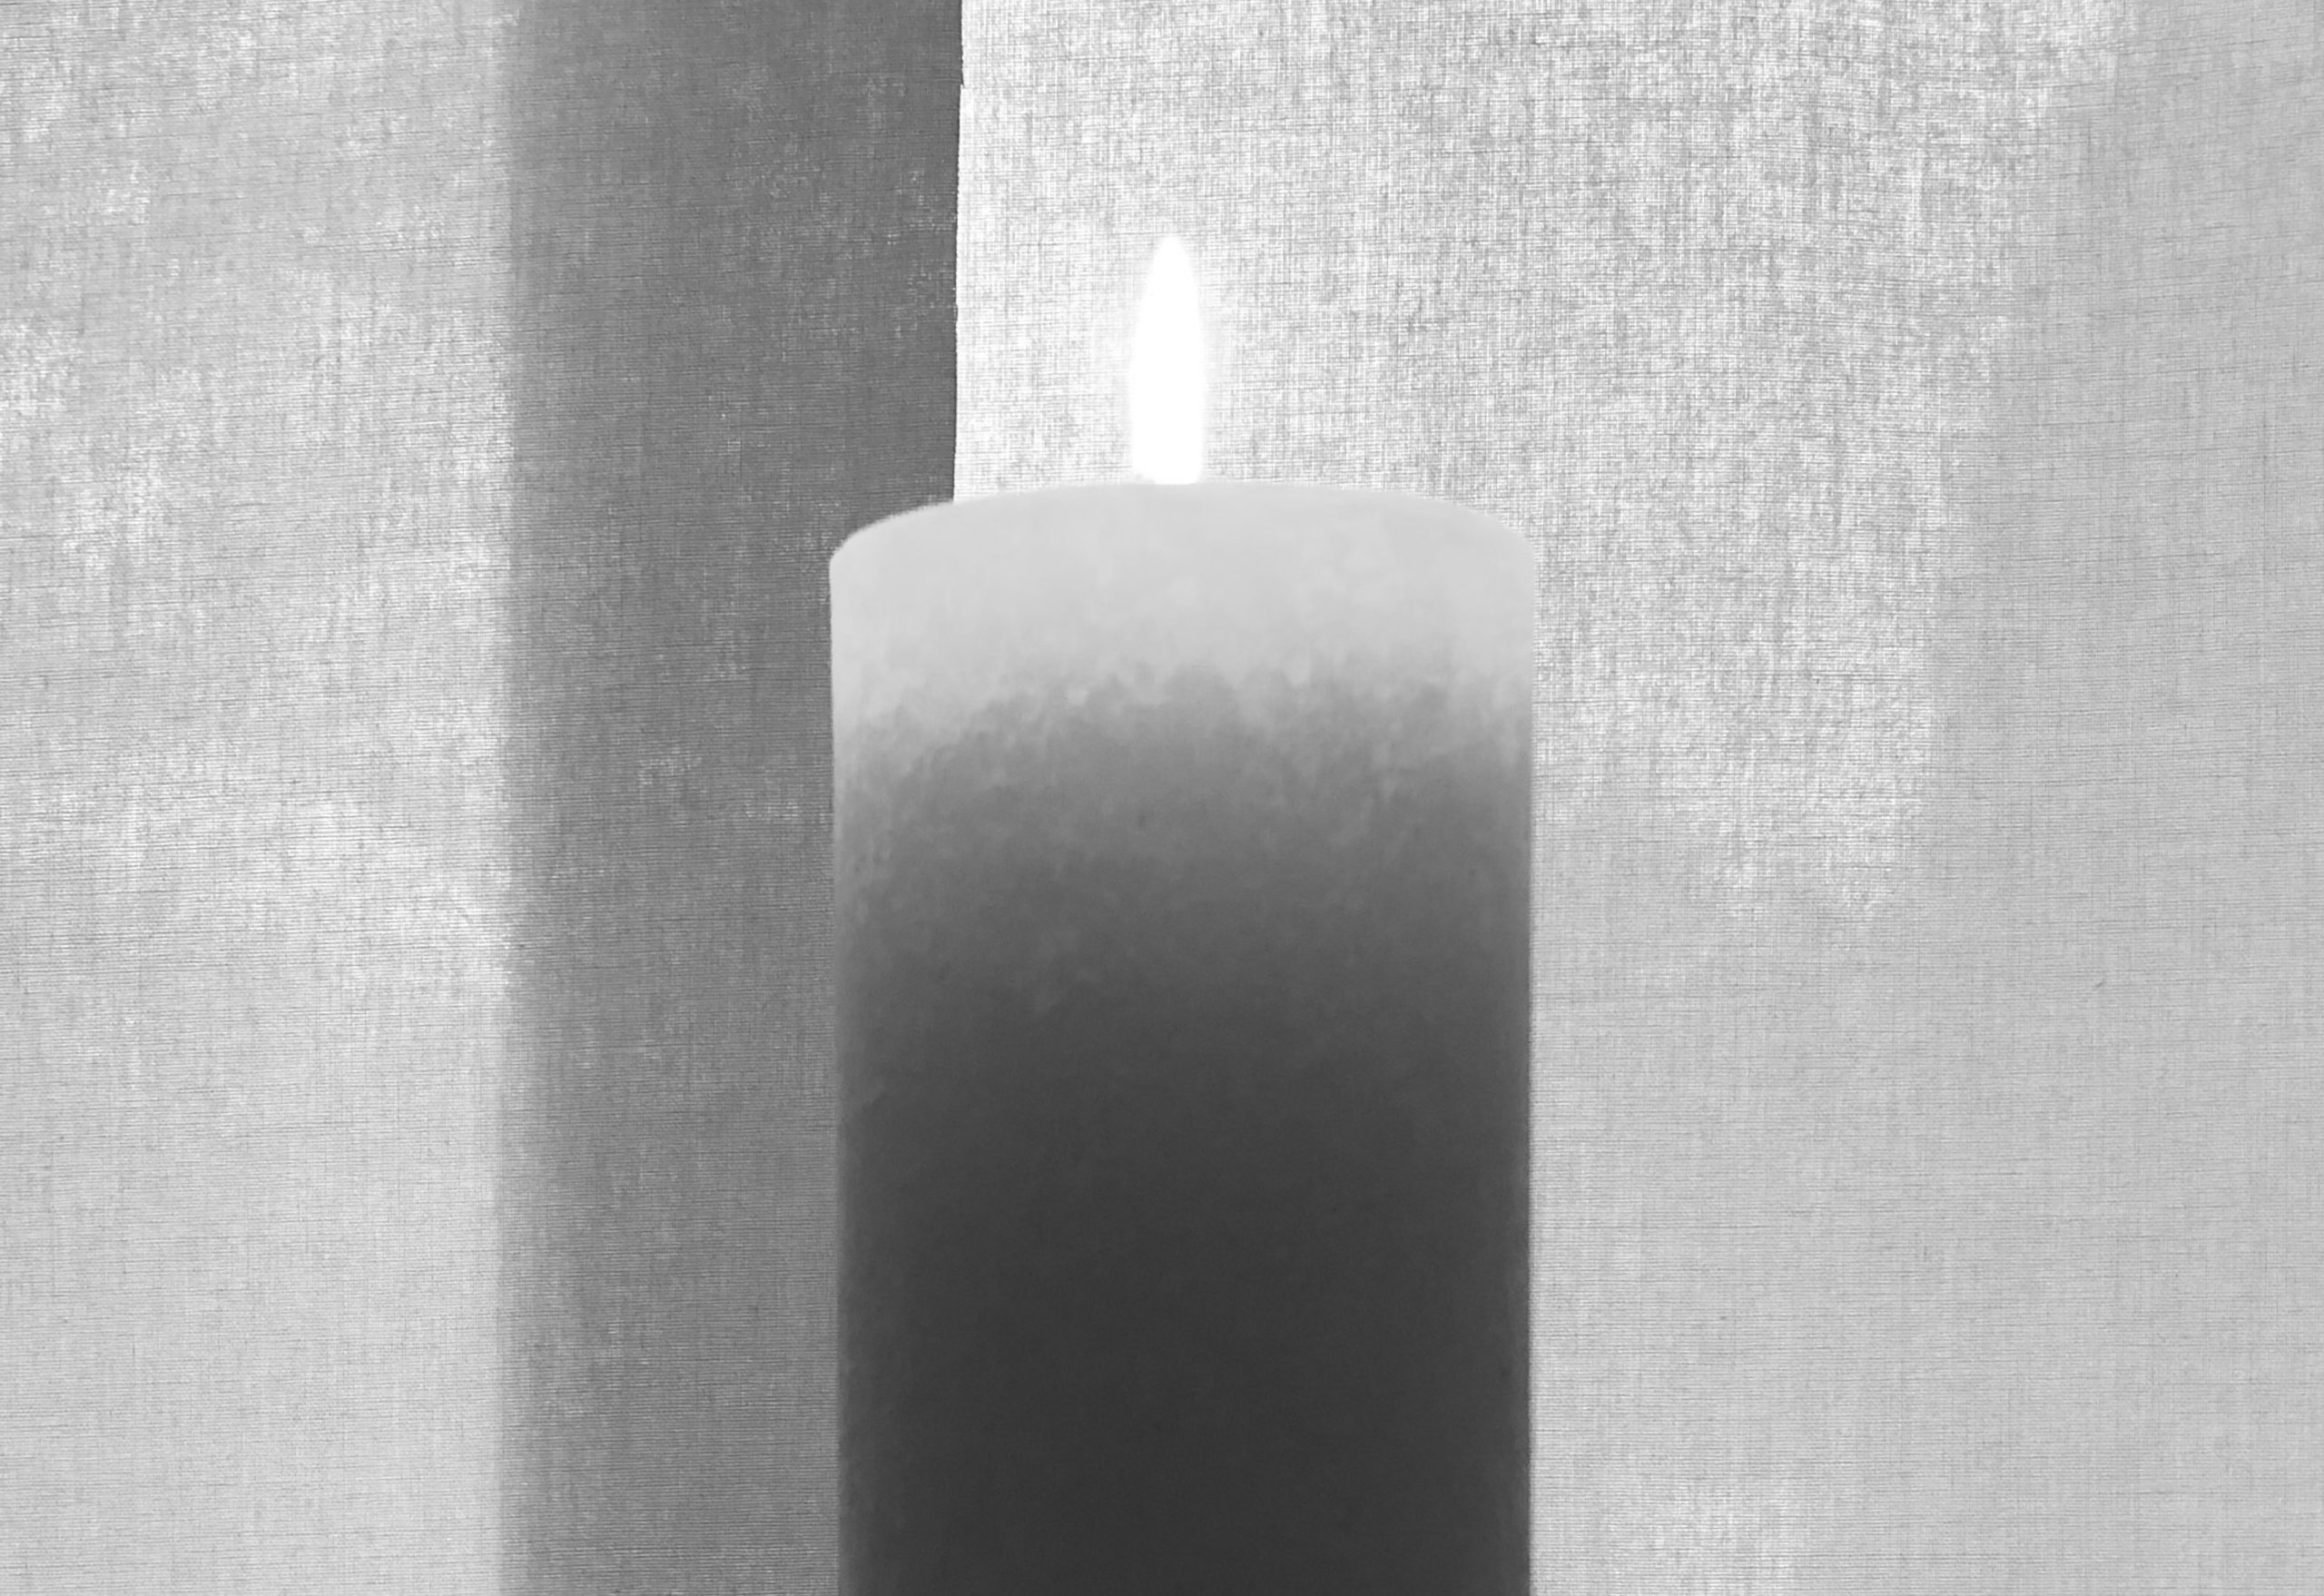 Brennende Kerze in schwarz-weiß, im Hintergrund Leinenstruktur